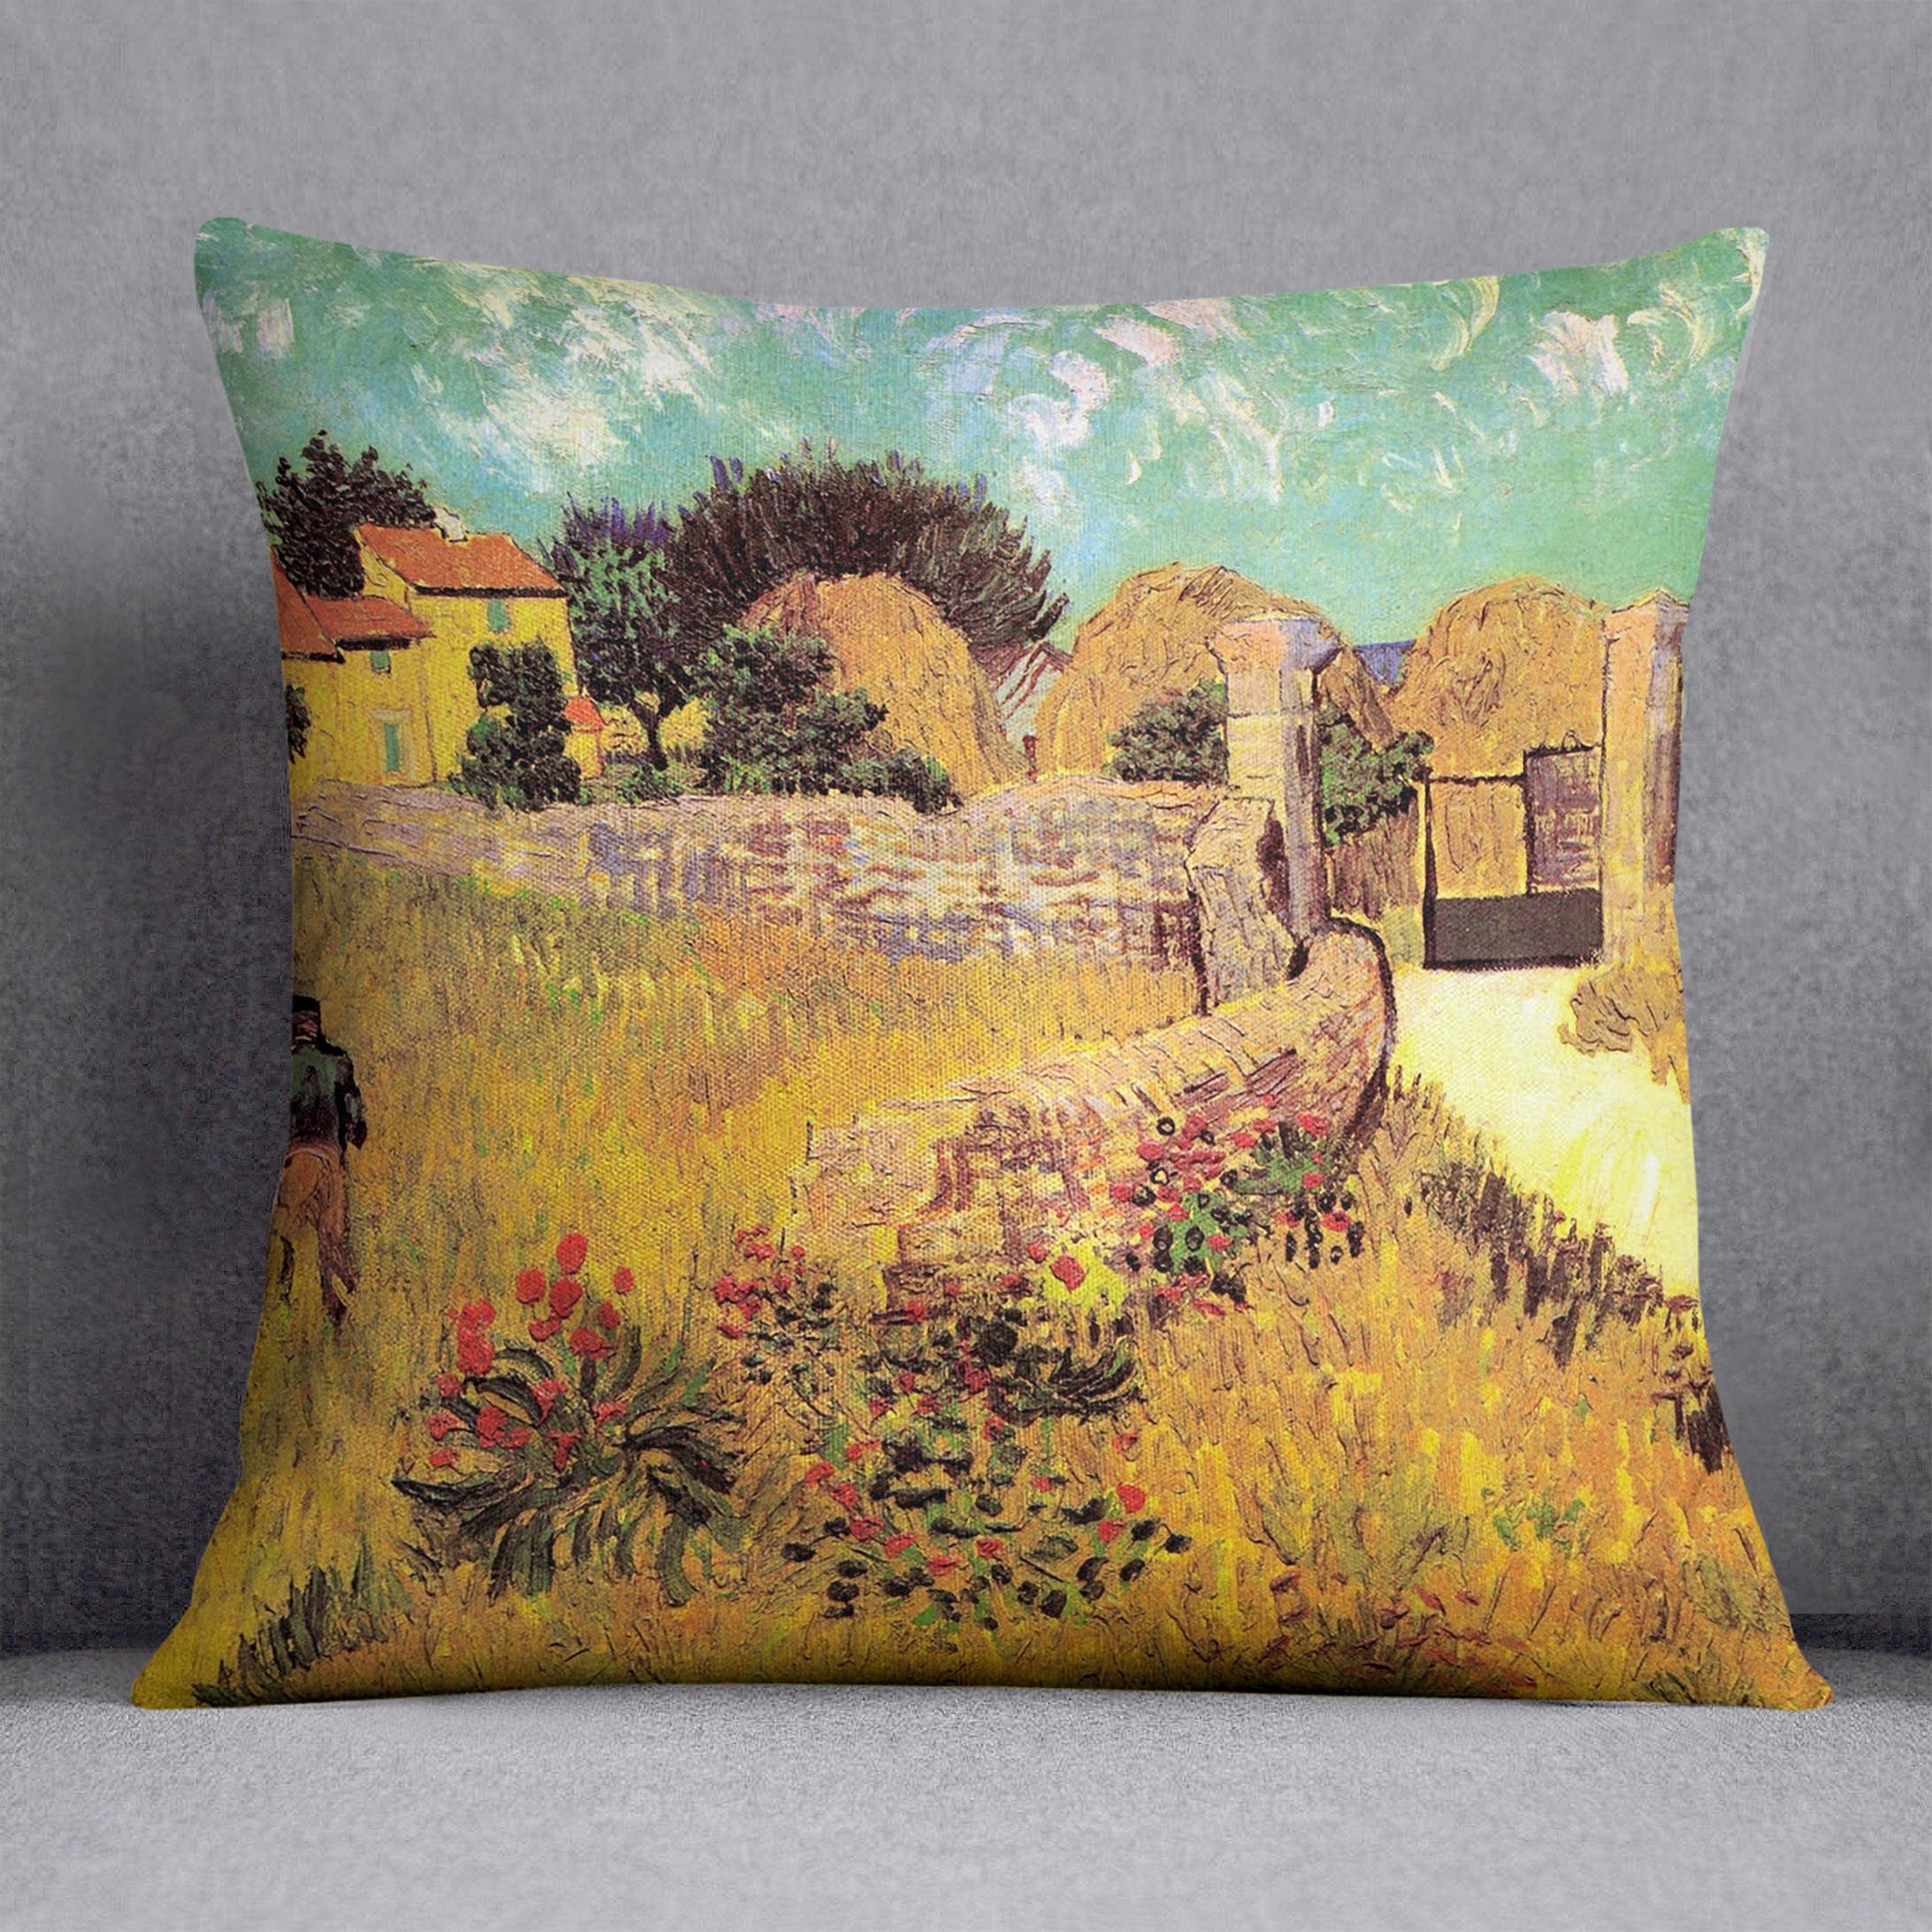 Farmhouse in Provence by Van Gogh Cushion